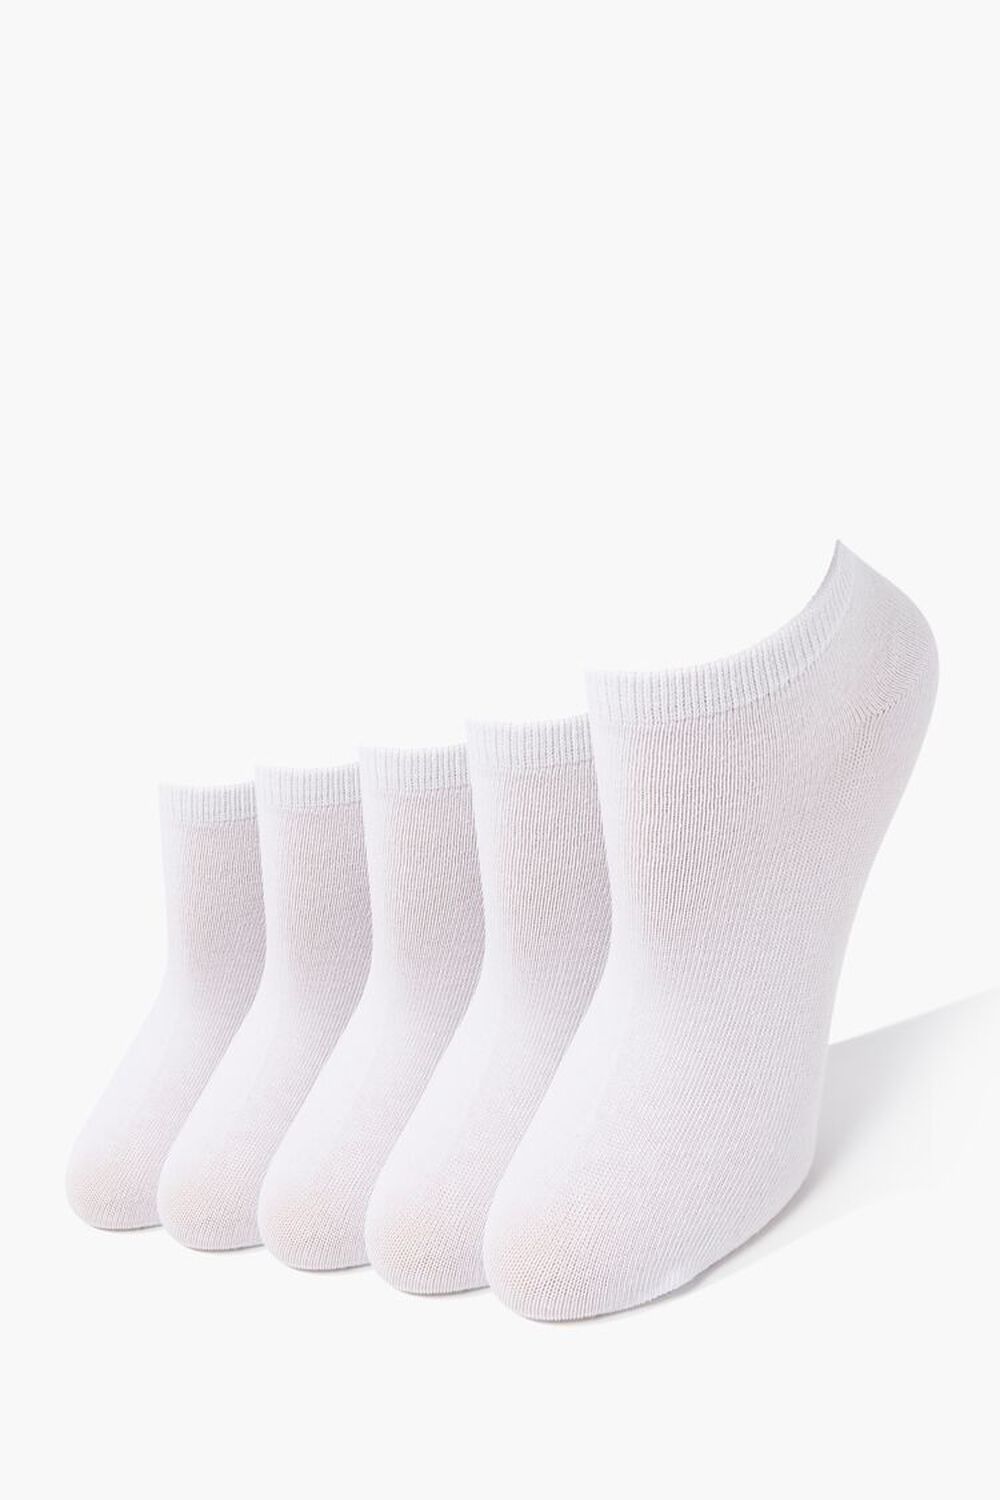 WHITE Ankle Socks - 5 Pack, image 1